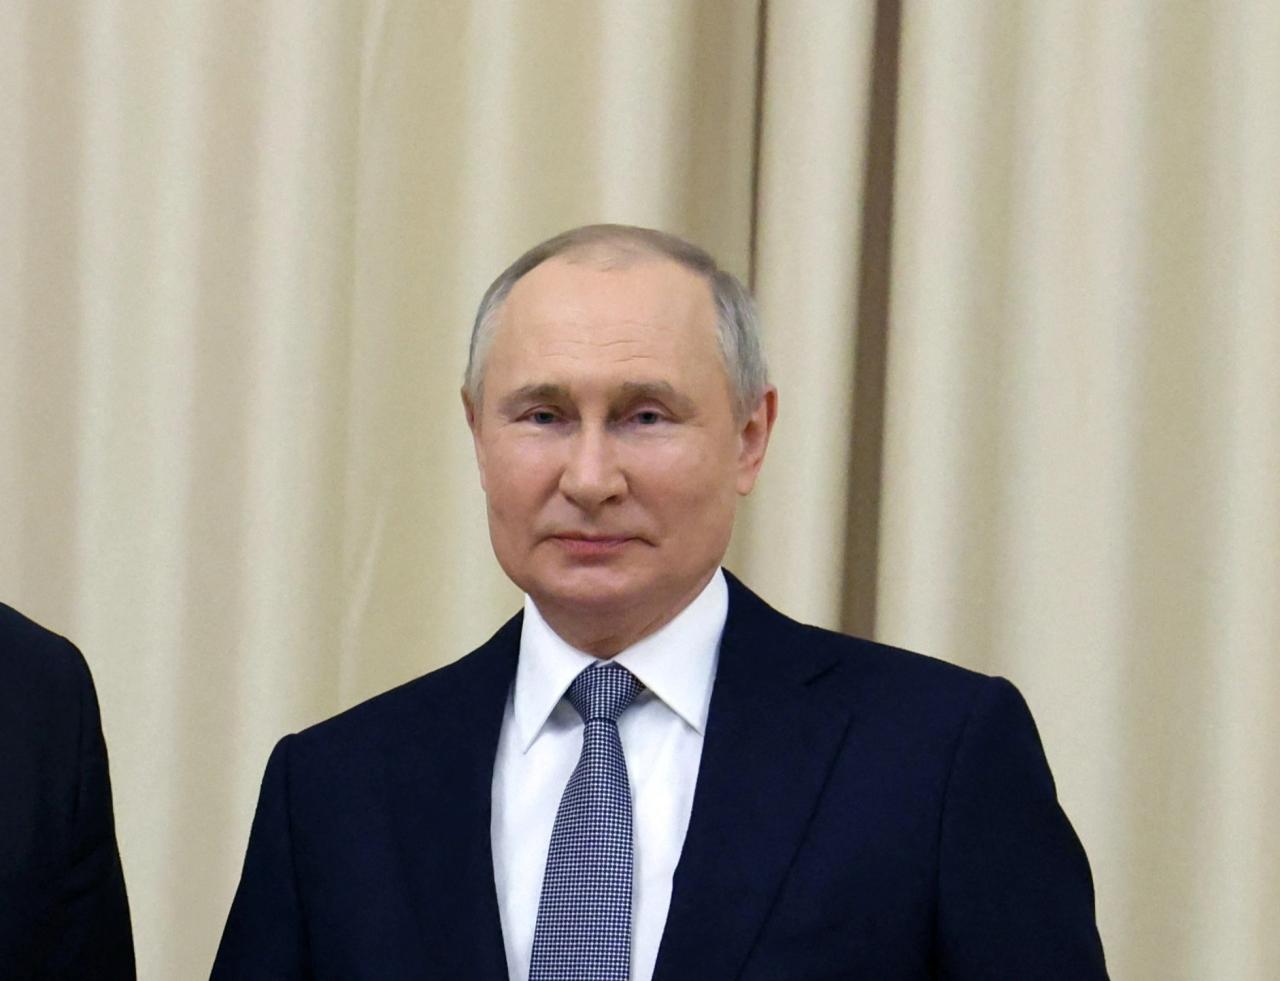 El primer ministro Boris Johnson advirtió que el gobierno del tirano ruso Putin estaba desesperado por la victoria después de todas las derrotas en torno a Kiev.